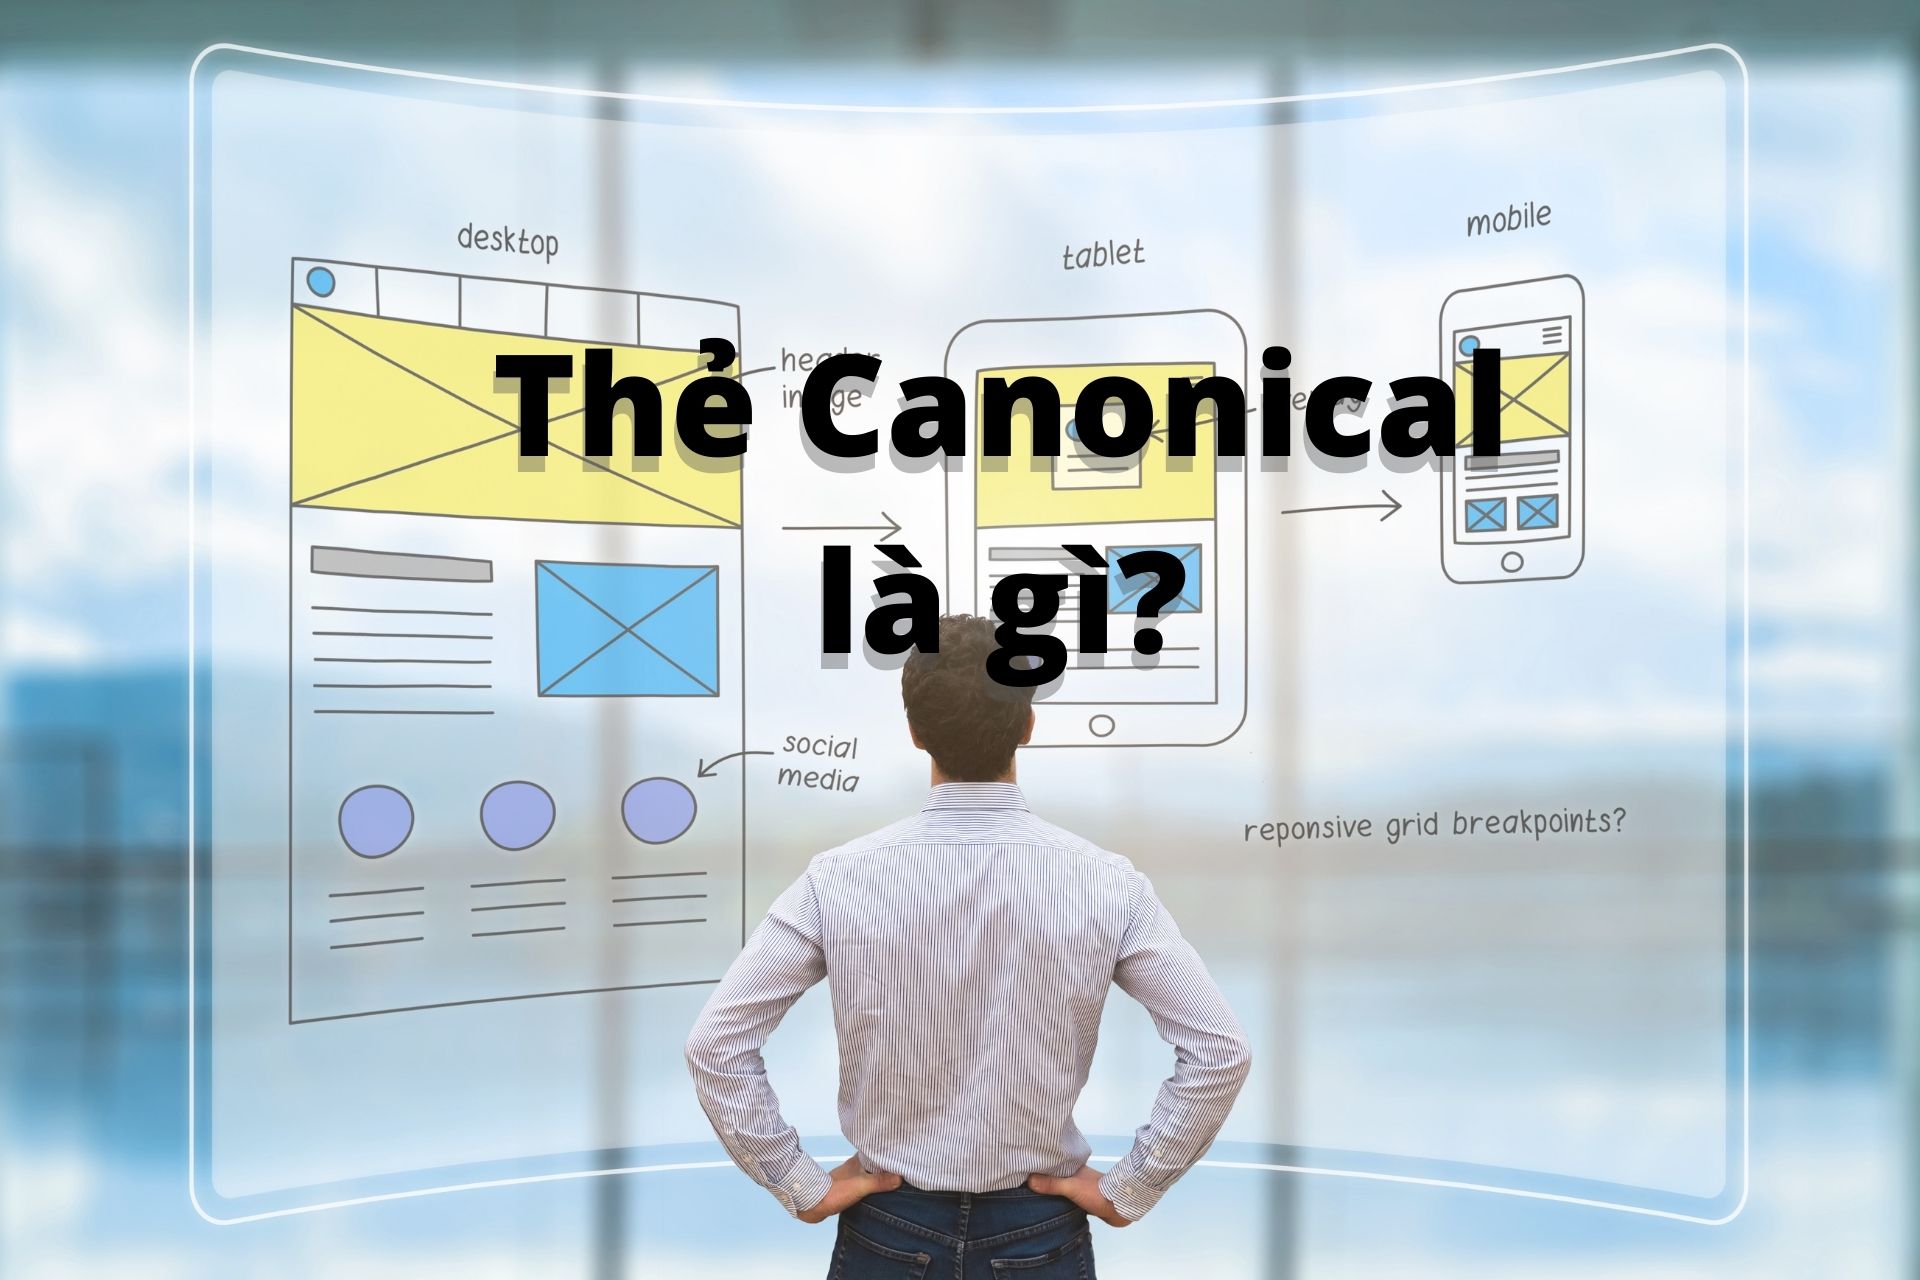 Tìm hiểu Canonical URL là gì? Canonical có quan trọng trong SEO?